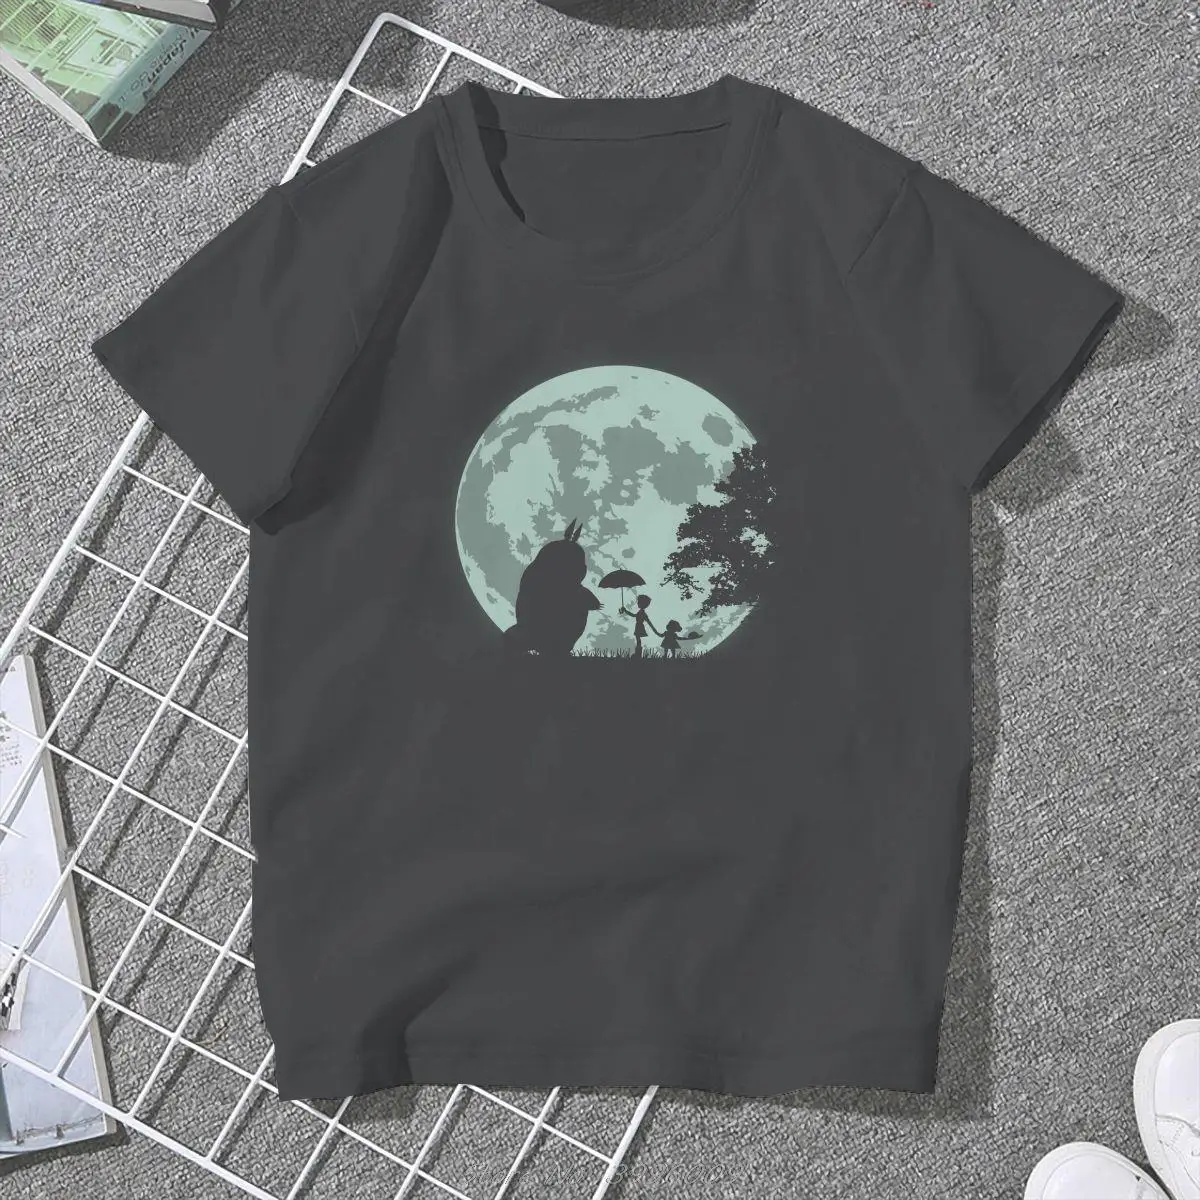 

Женская одежда Moon, футболки с графическим рисунком в стиле м/ф «Мой сосед Тоторо», винтажные альтернативные свободные топы, футболка, улична...